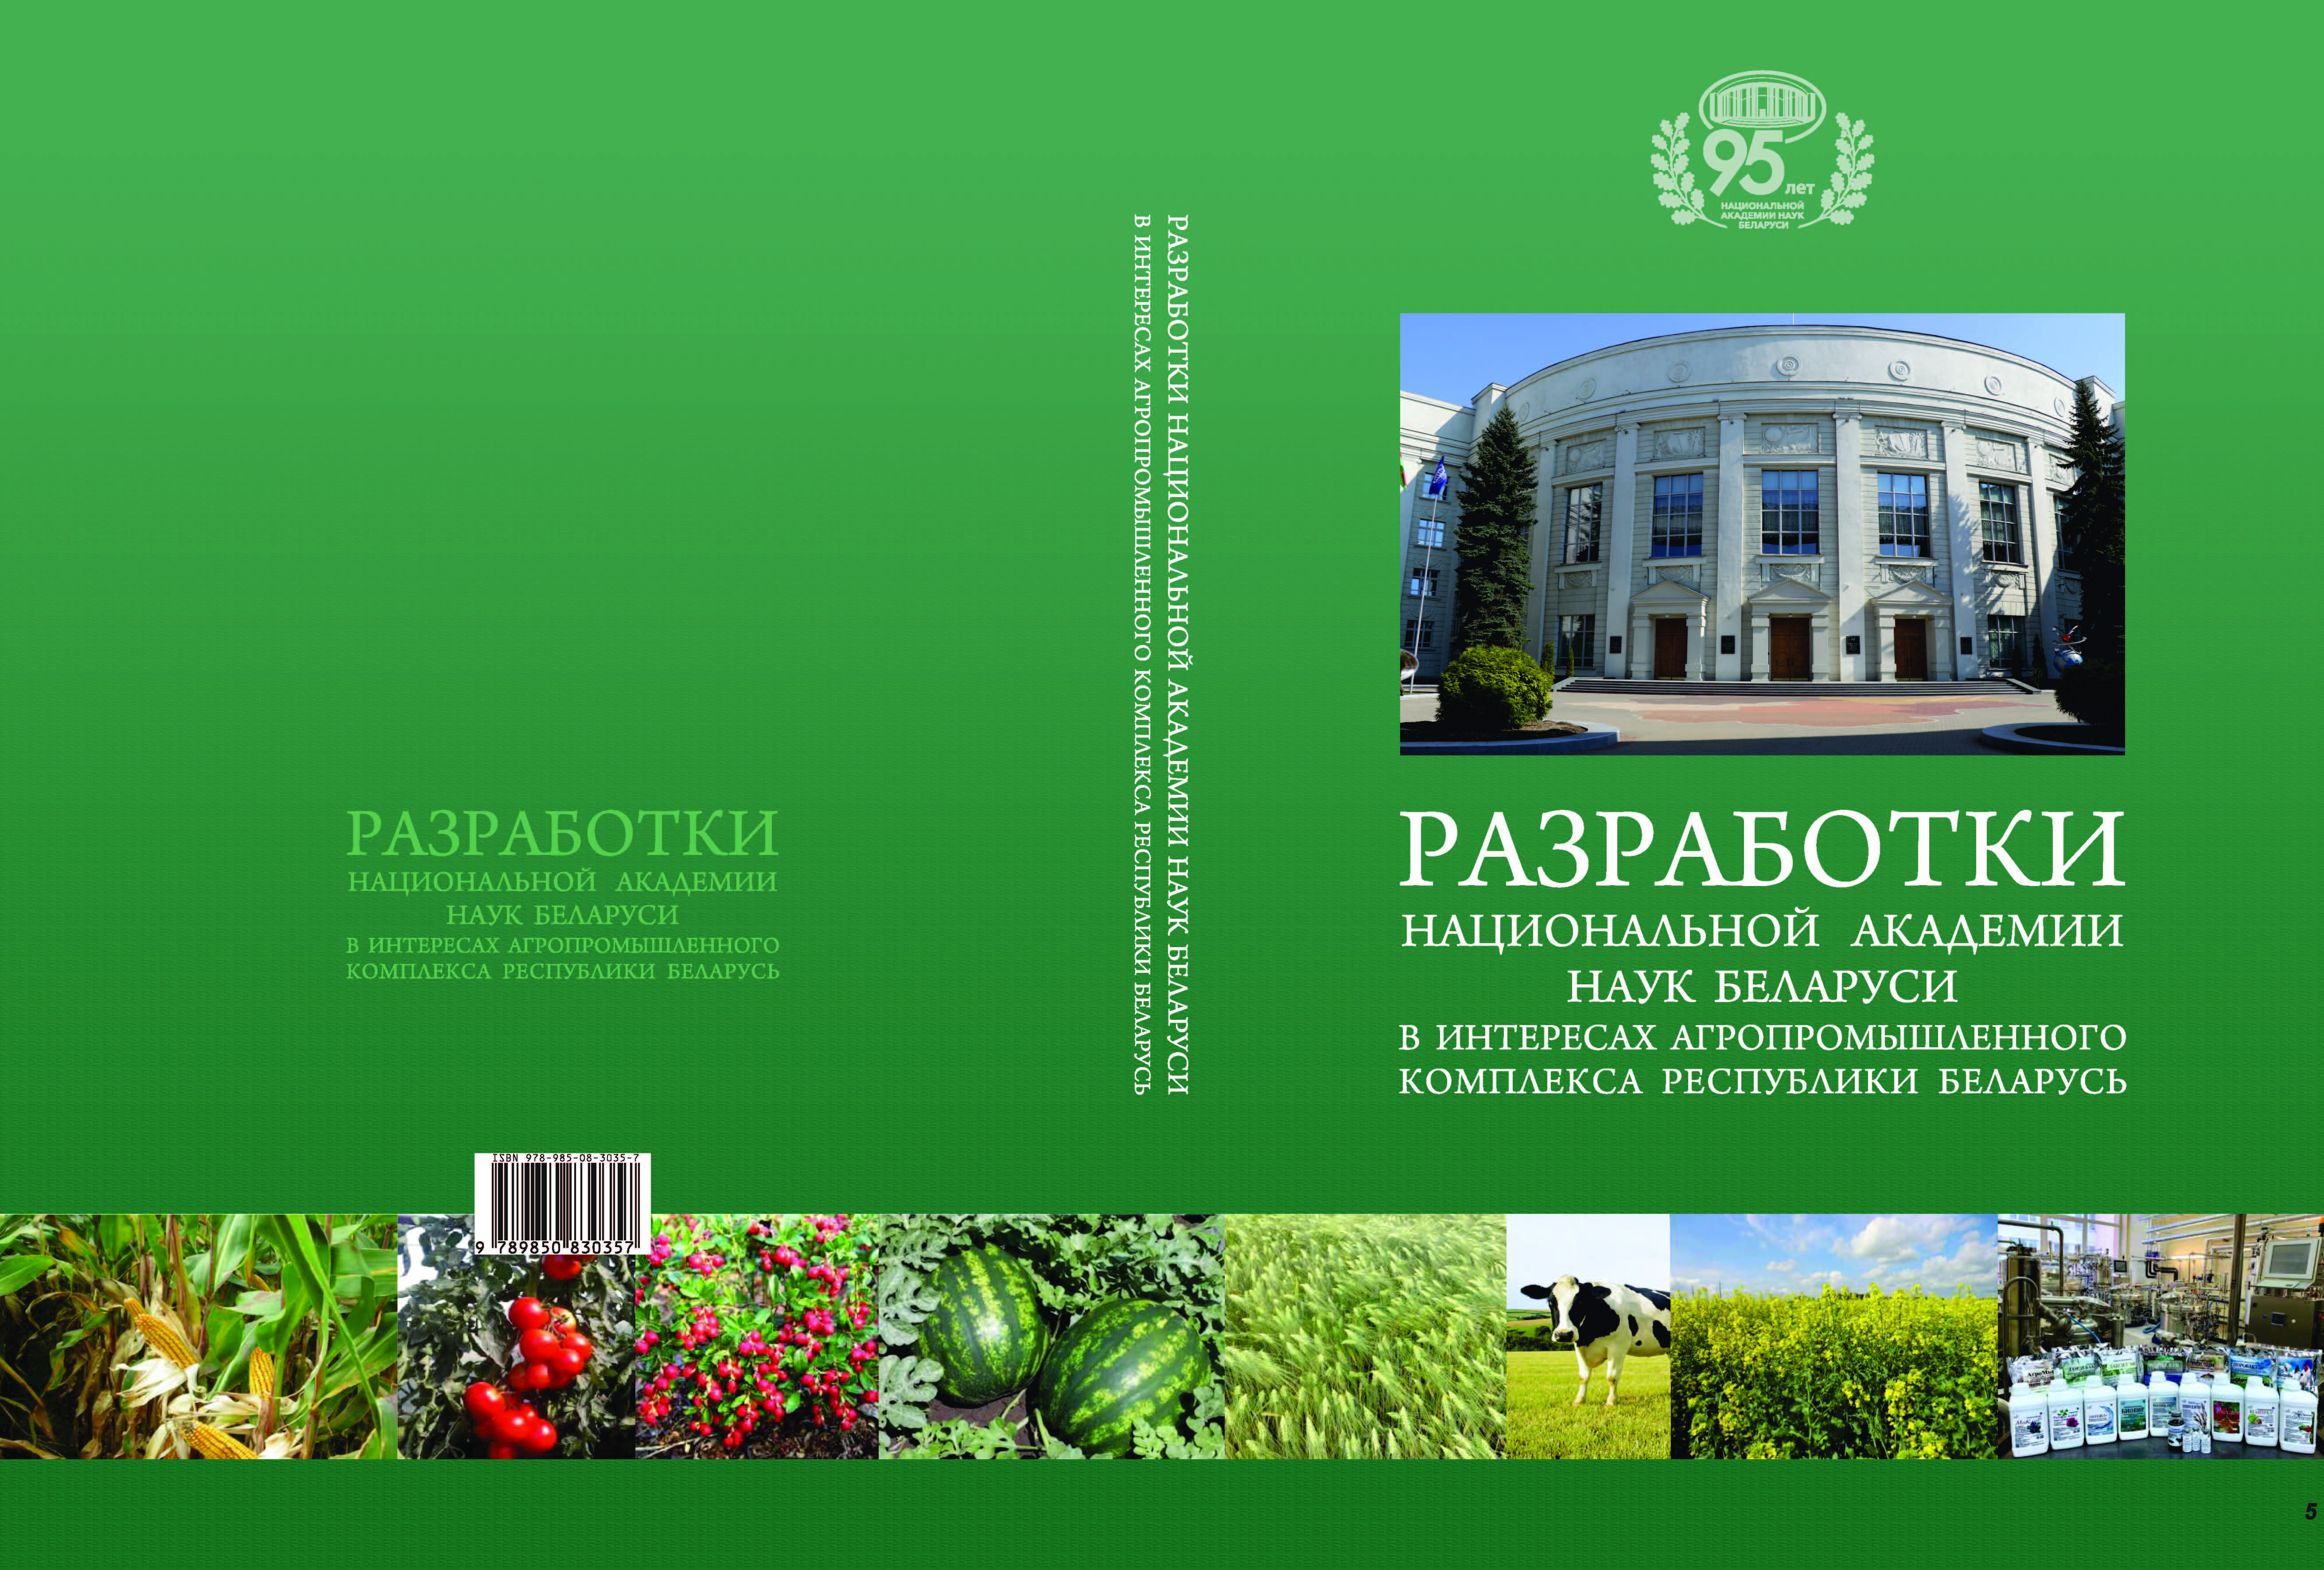 Разработки НАН Беларуси в интересах агропромышленного комплекса